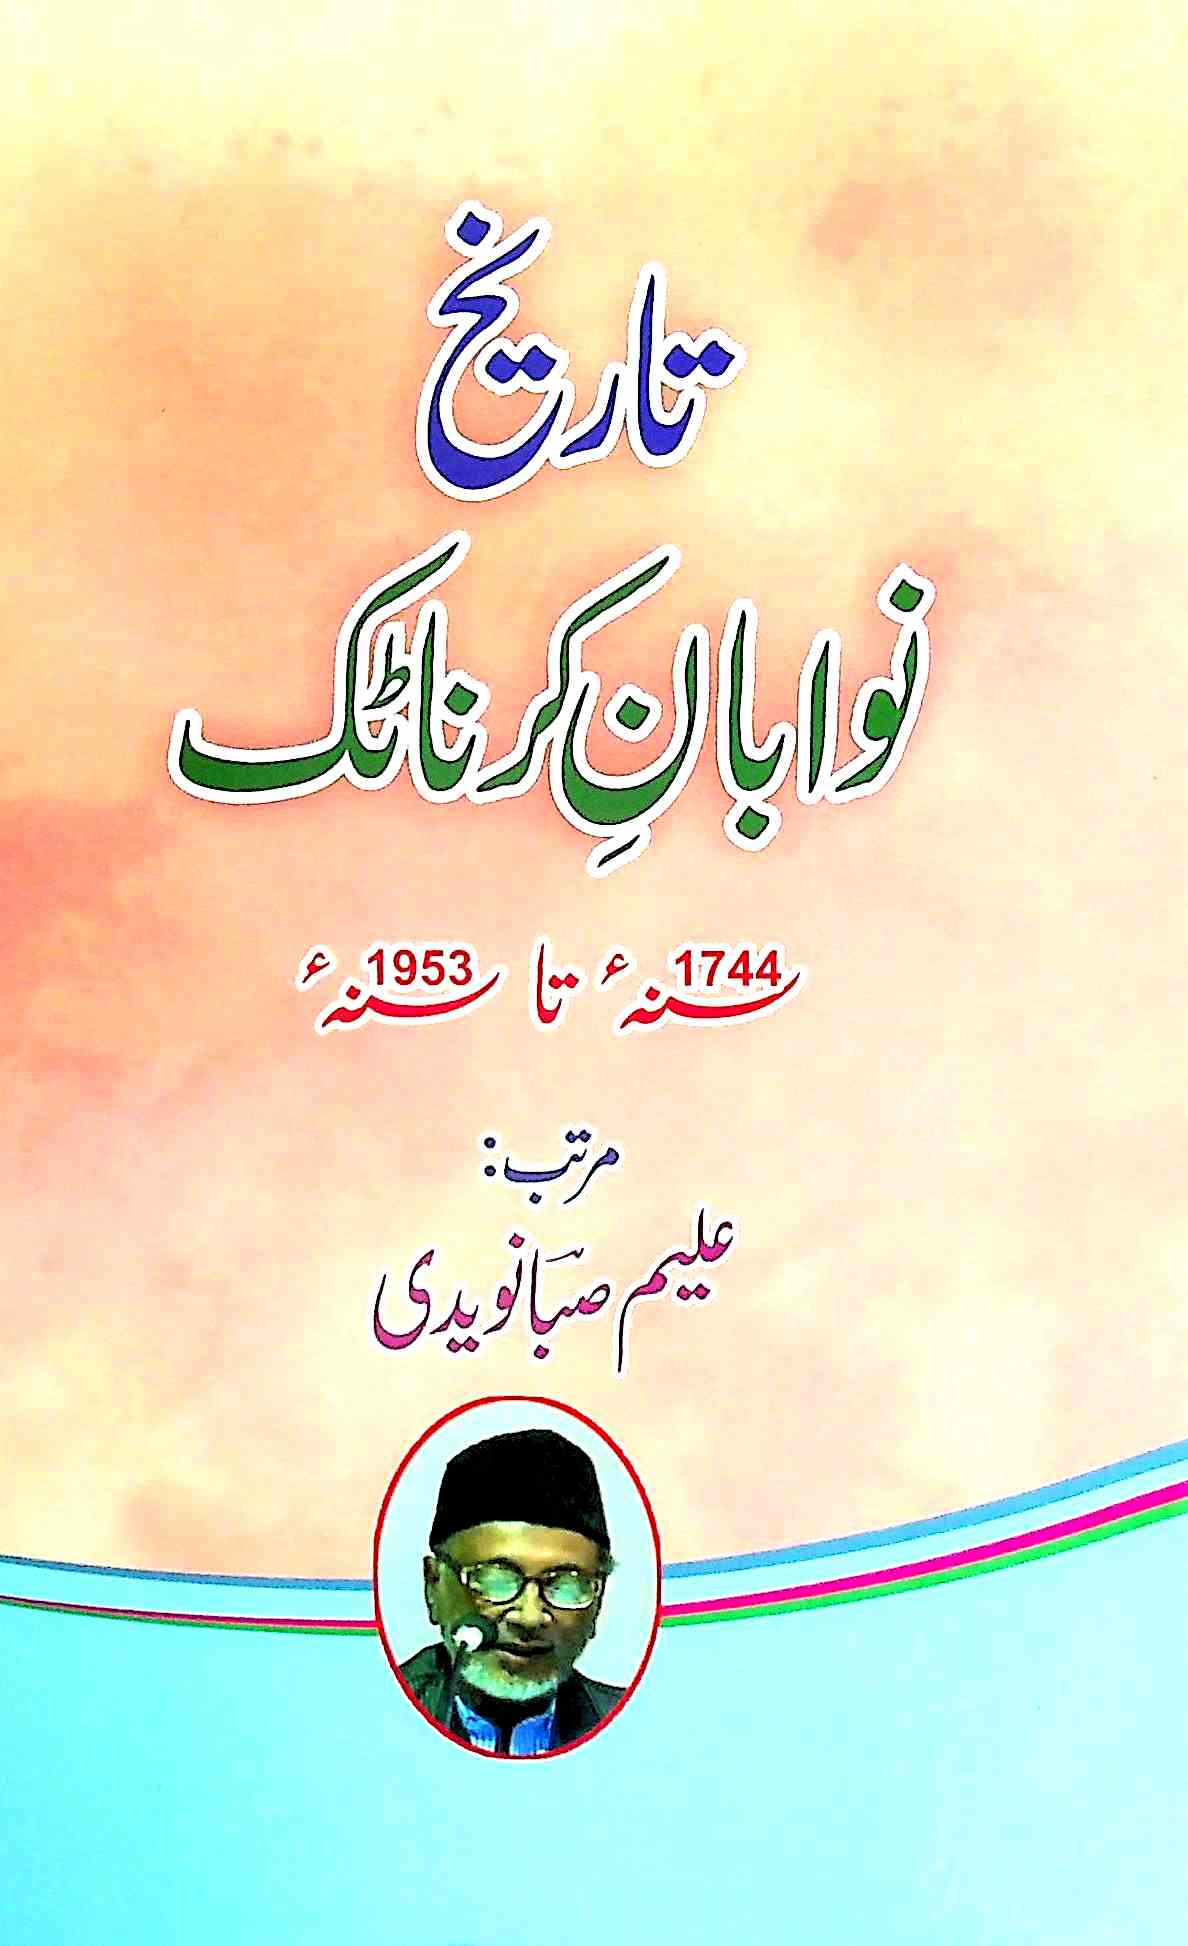 tareekh nawaban-e-karnatak 1744 ta 1953